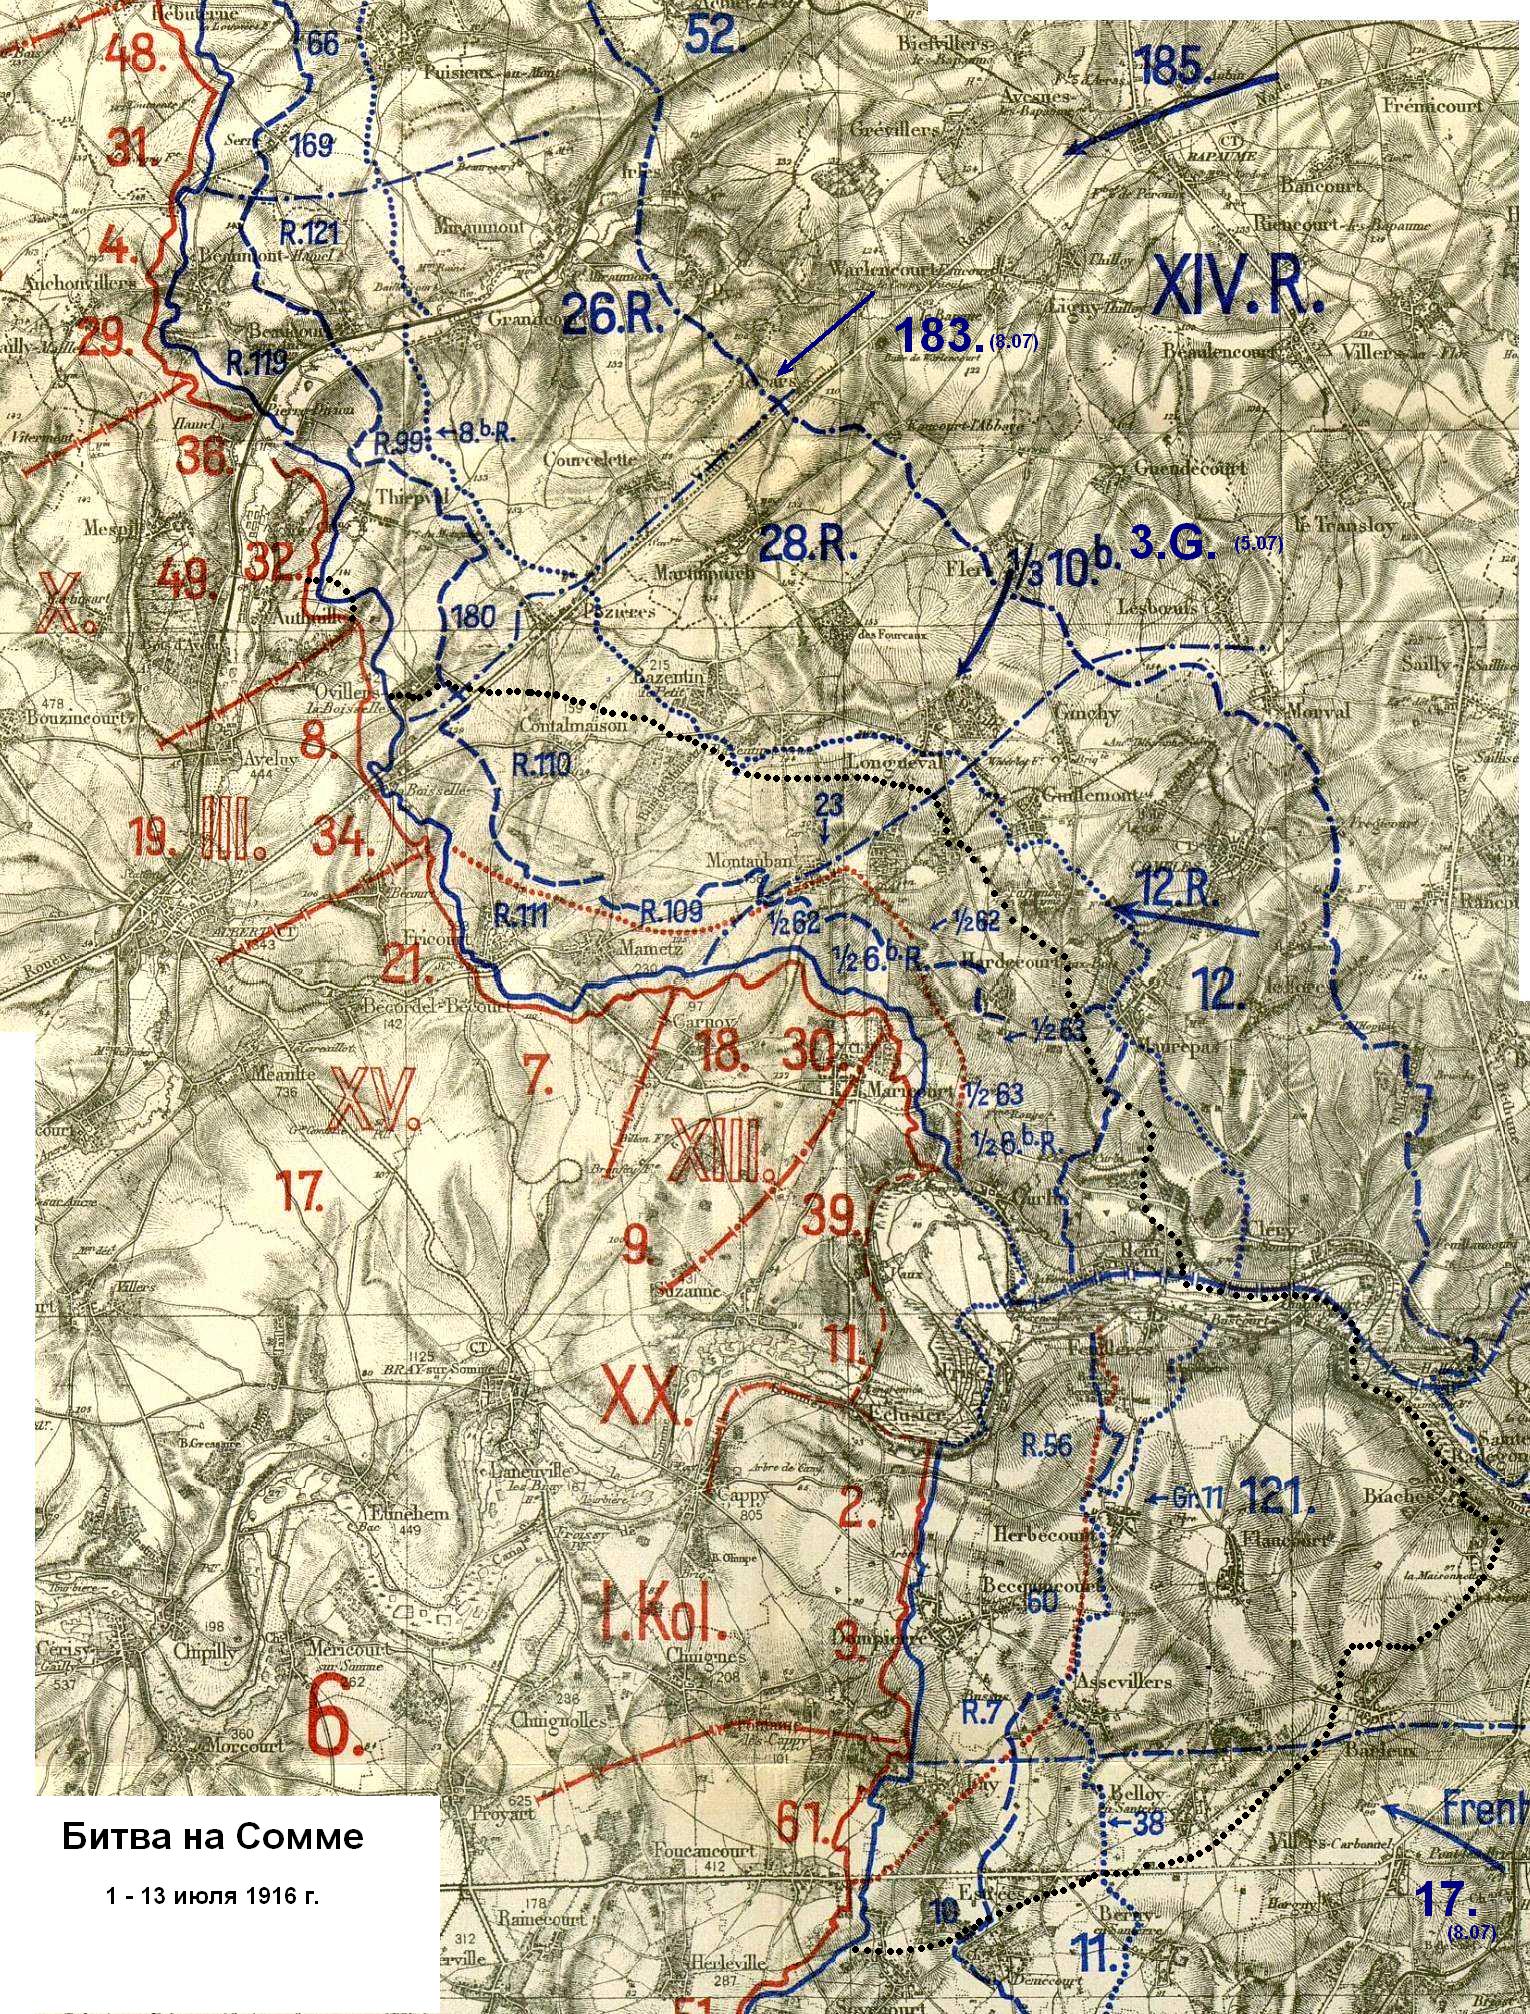 Общая схема первого этапа Битвы на Сомме, известного как сражение при Альбере с 1 по 13 июля 1916 года